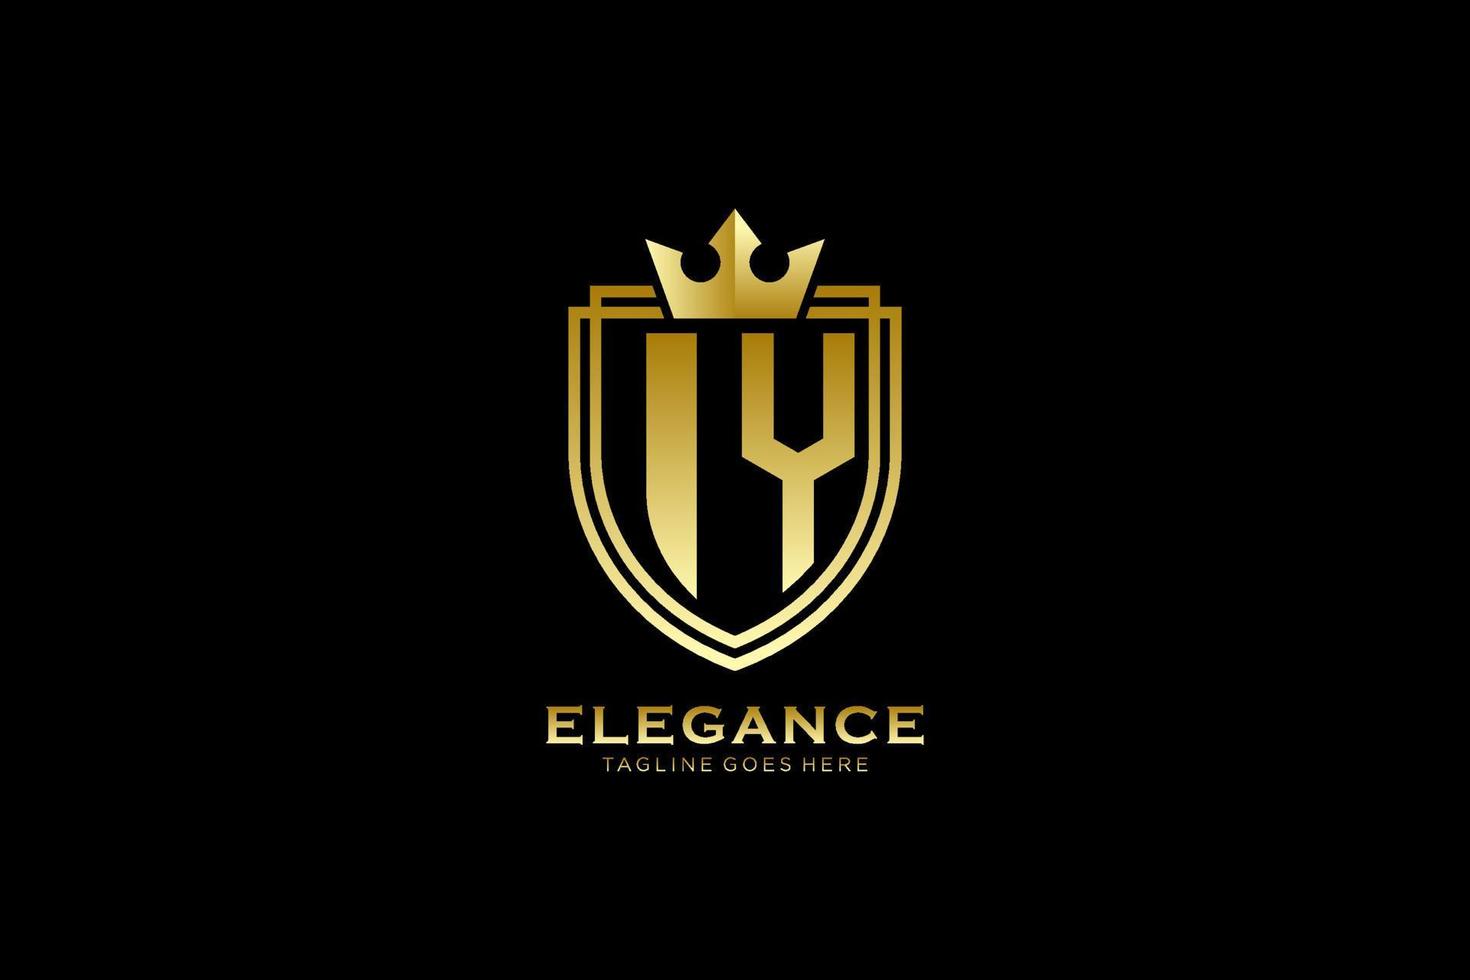 logotipo de monograma de lujo inicial iy elegante o plantilla de insignia con pergaminos y corona real - perfecto para proyectos de marca de lujo vector